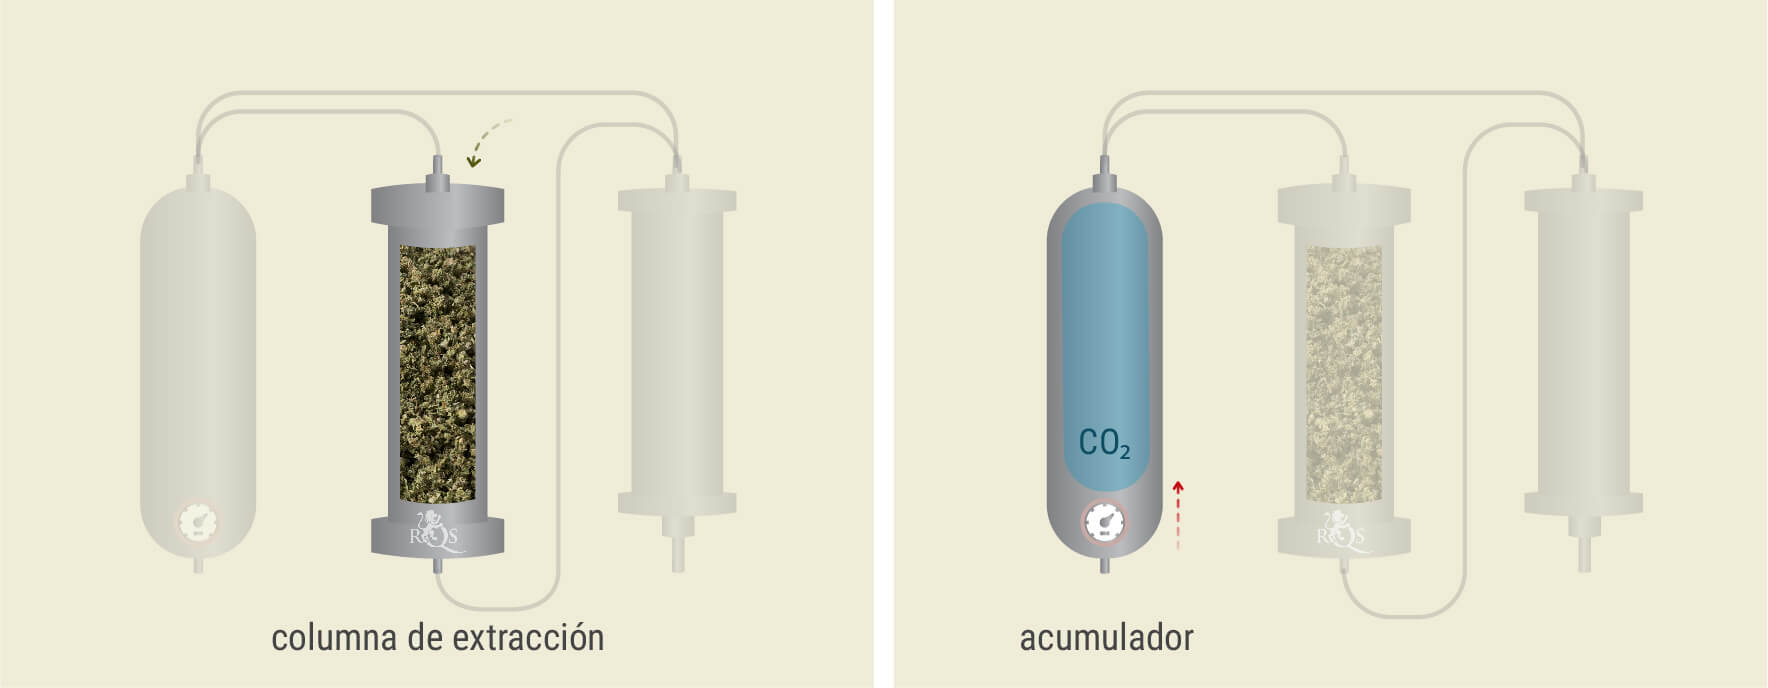 Extracción con CO₂: Proceso paso a paso